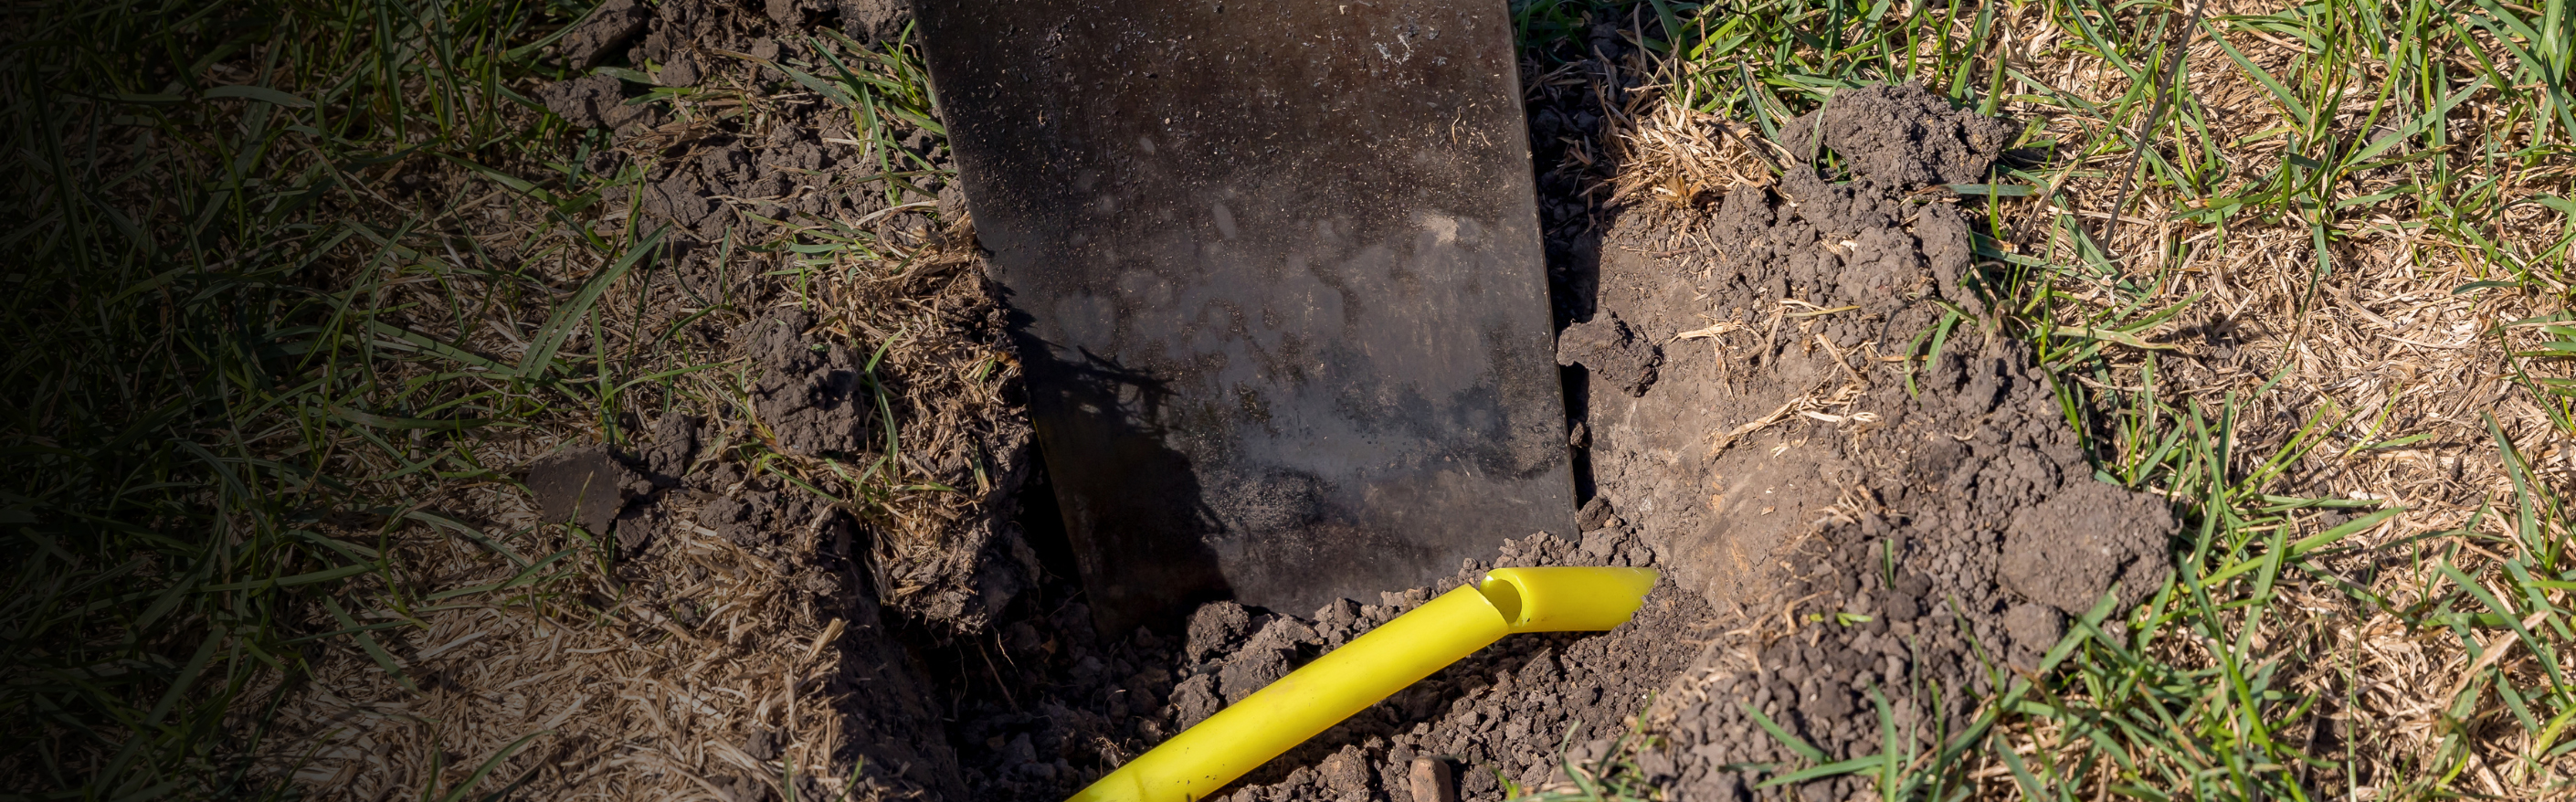 safe digging shovel and pipe